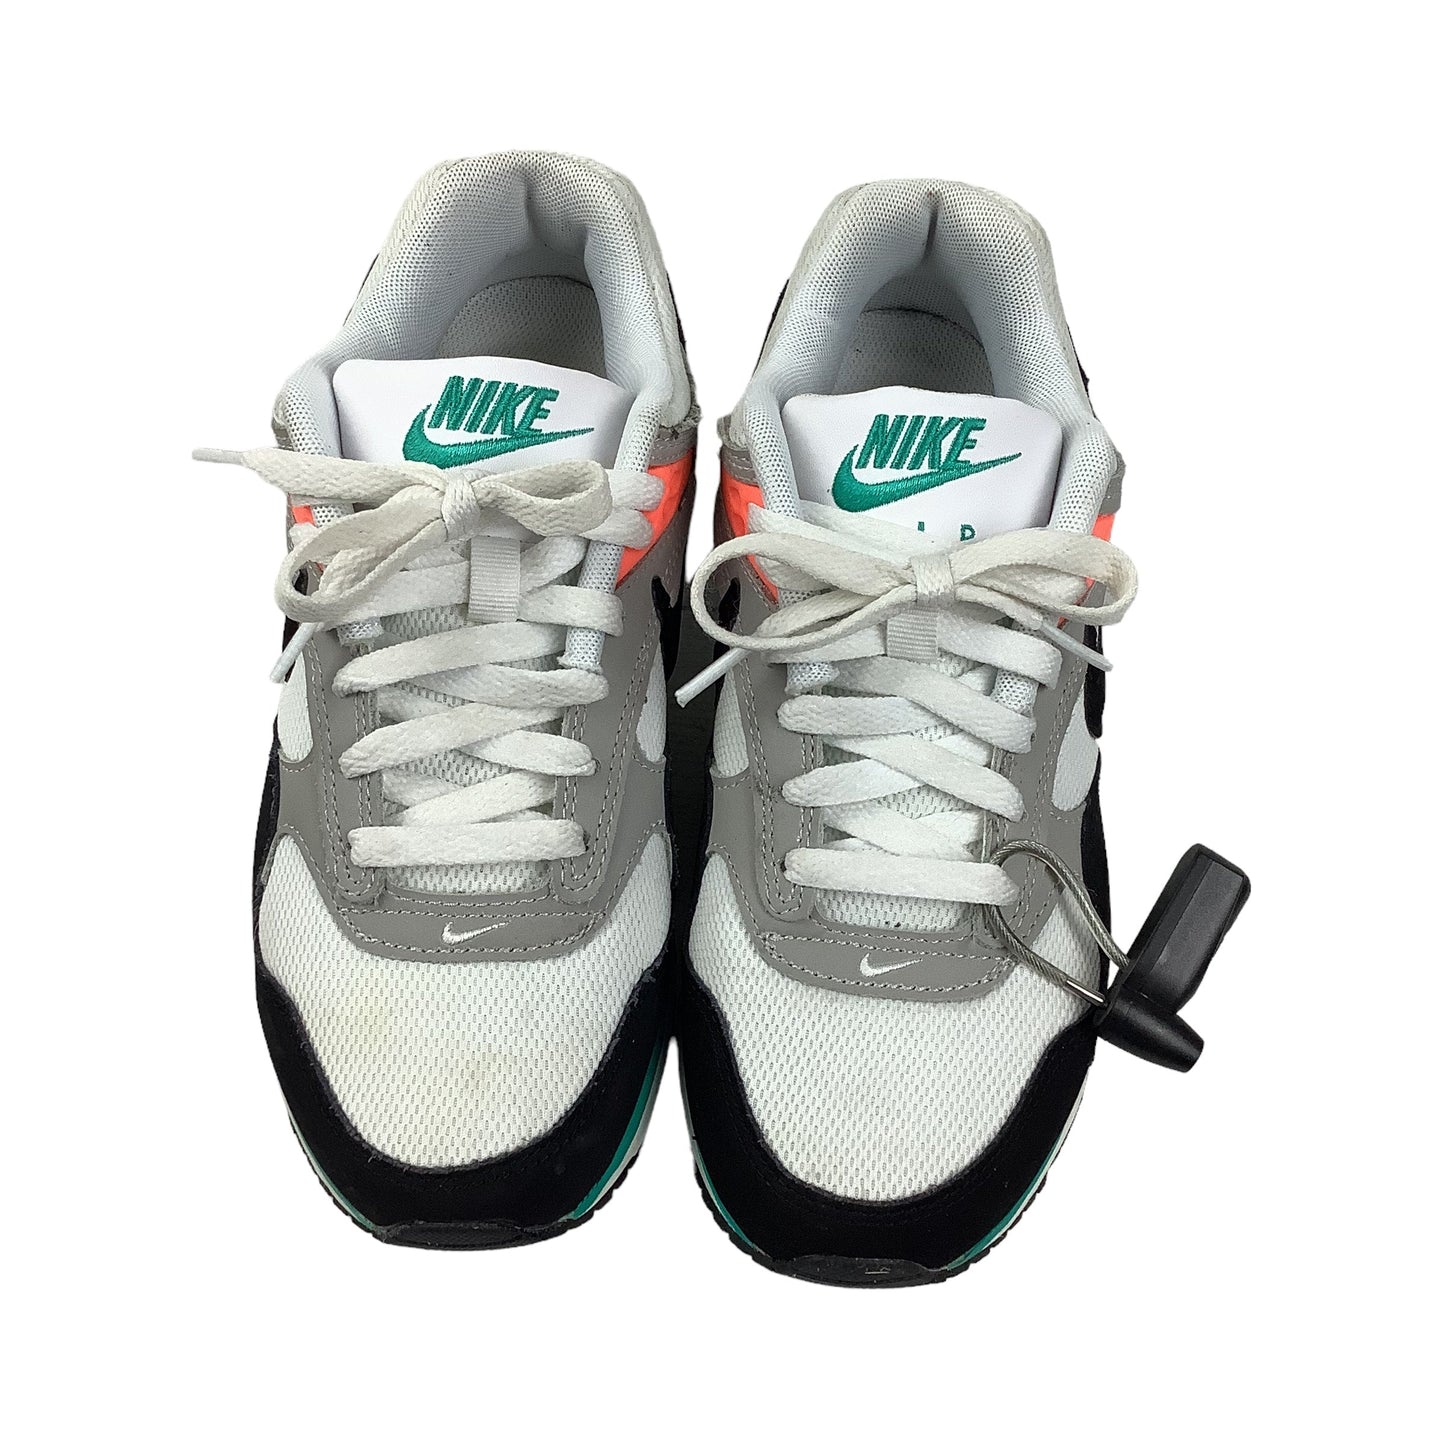 White Shoes Athletic Nike, Size 6.5